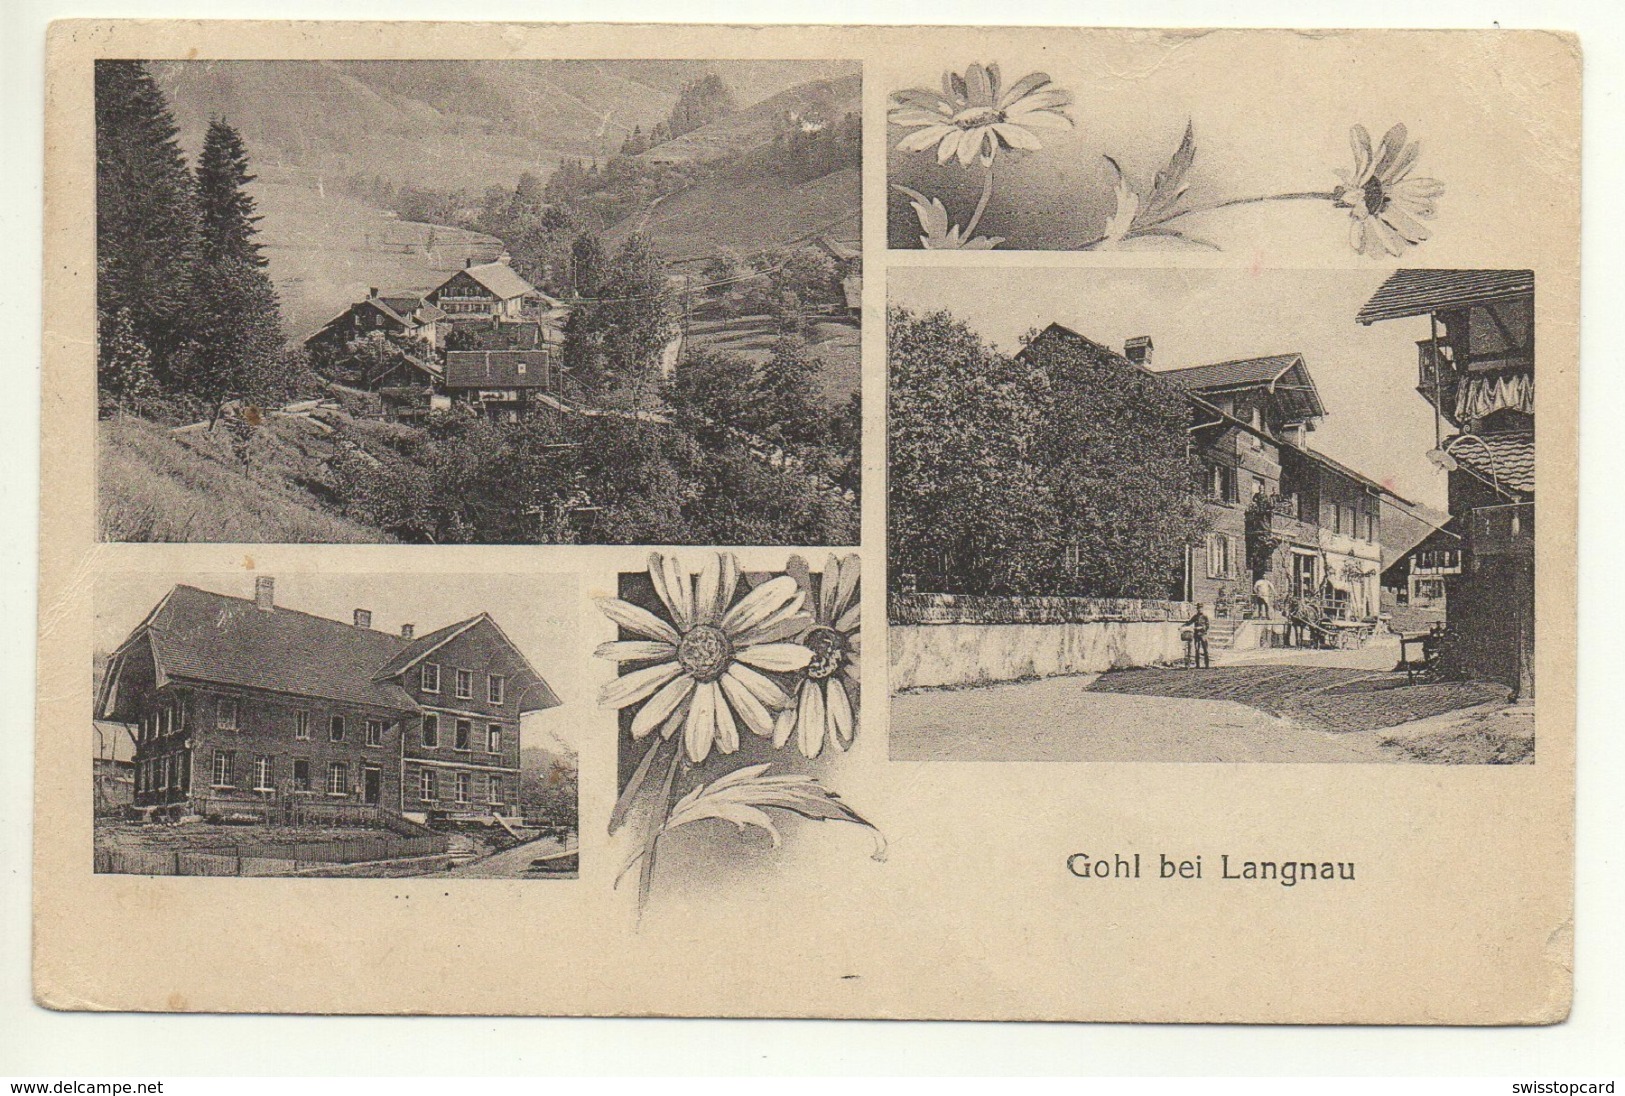 GOHL Bei Langnau I.E. - Langnau Im Emmental